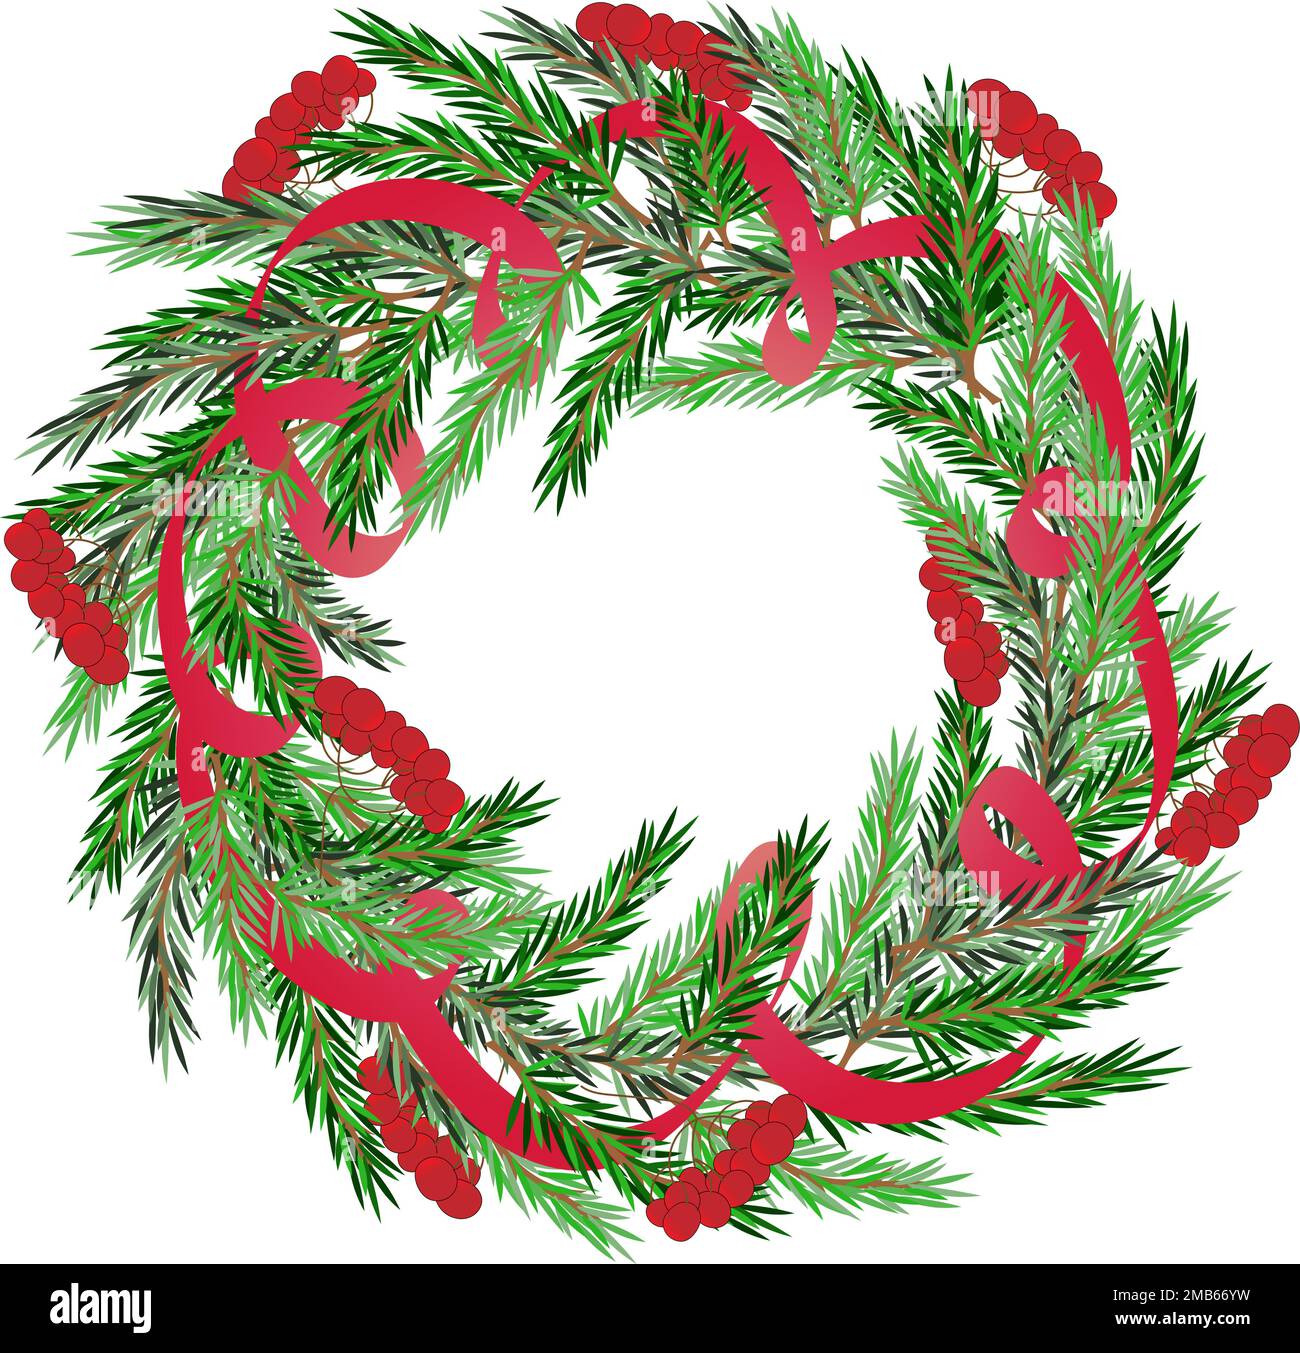 Couronne de Noël d'hiver réaliste avec branches à feuilles persistantes, ruban rouge décoratif et baies Illustration de Vecteur